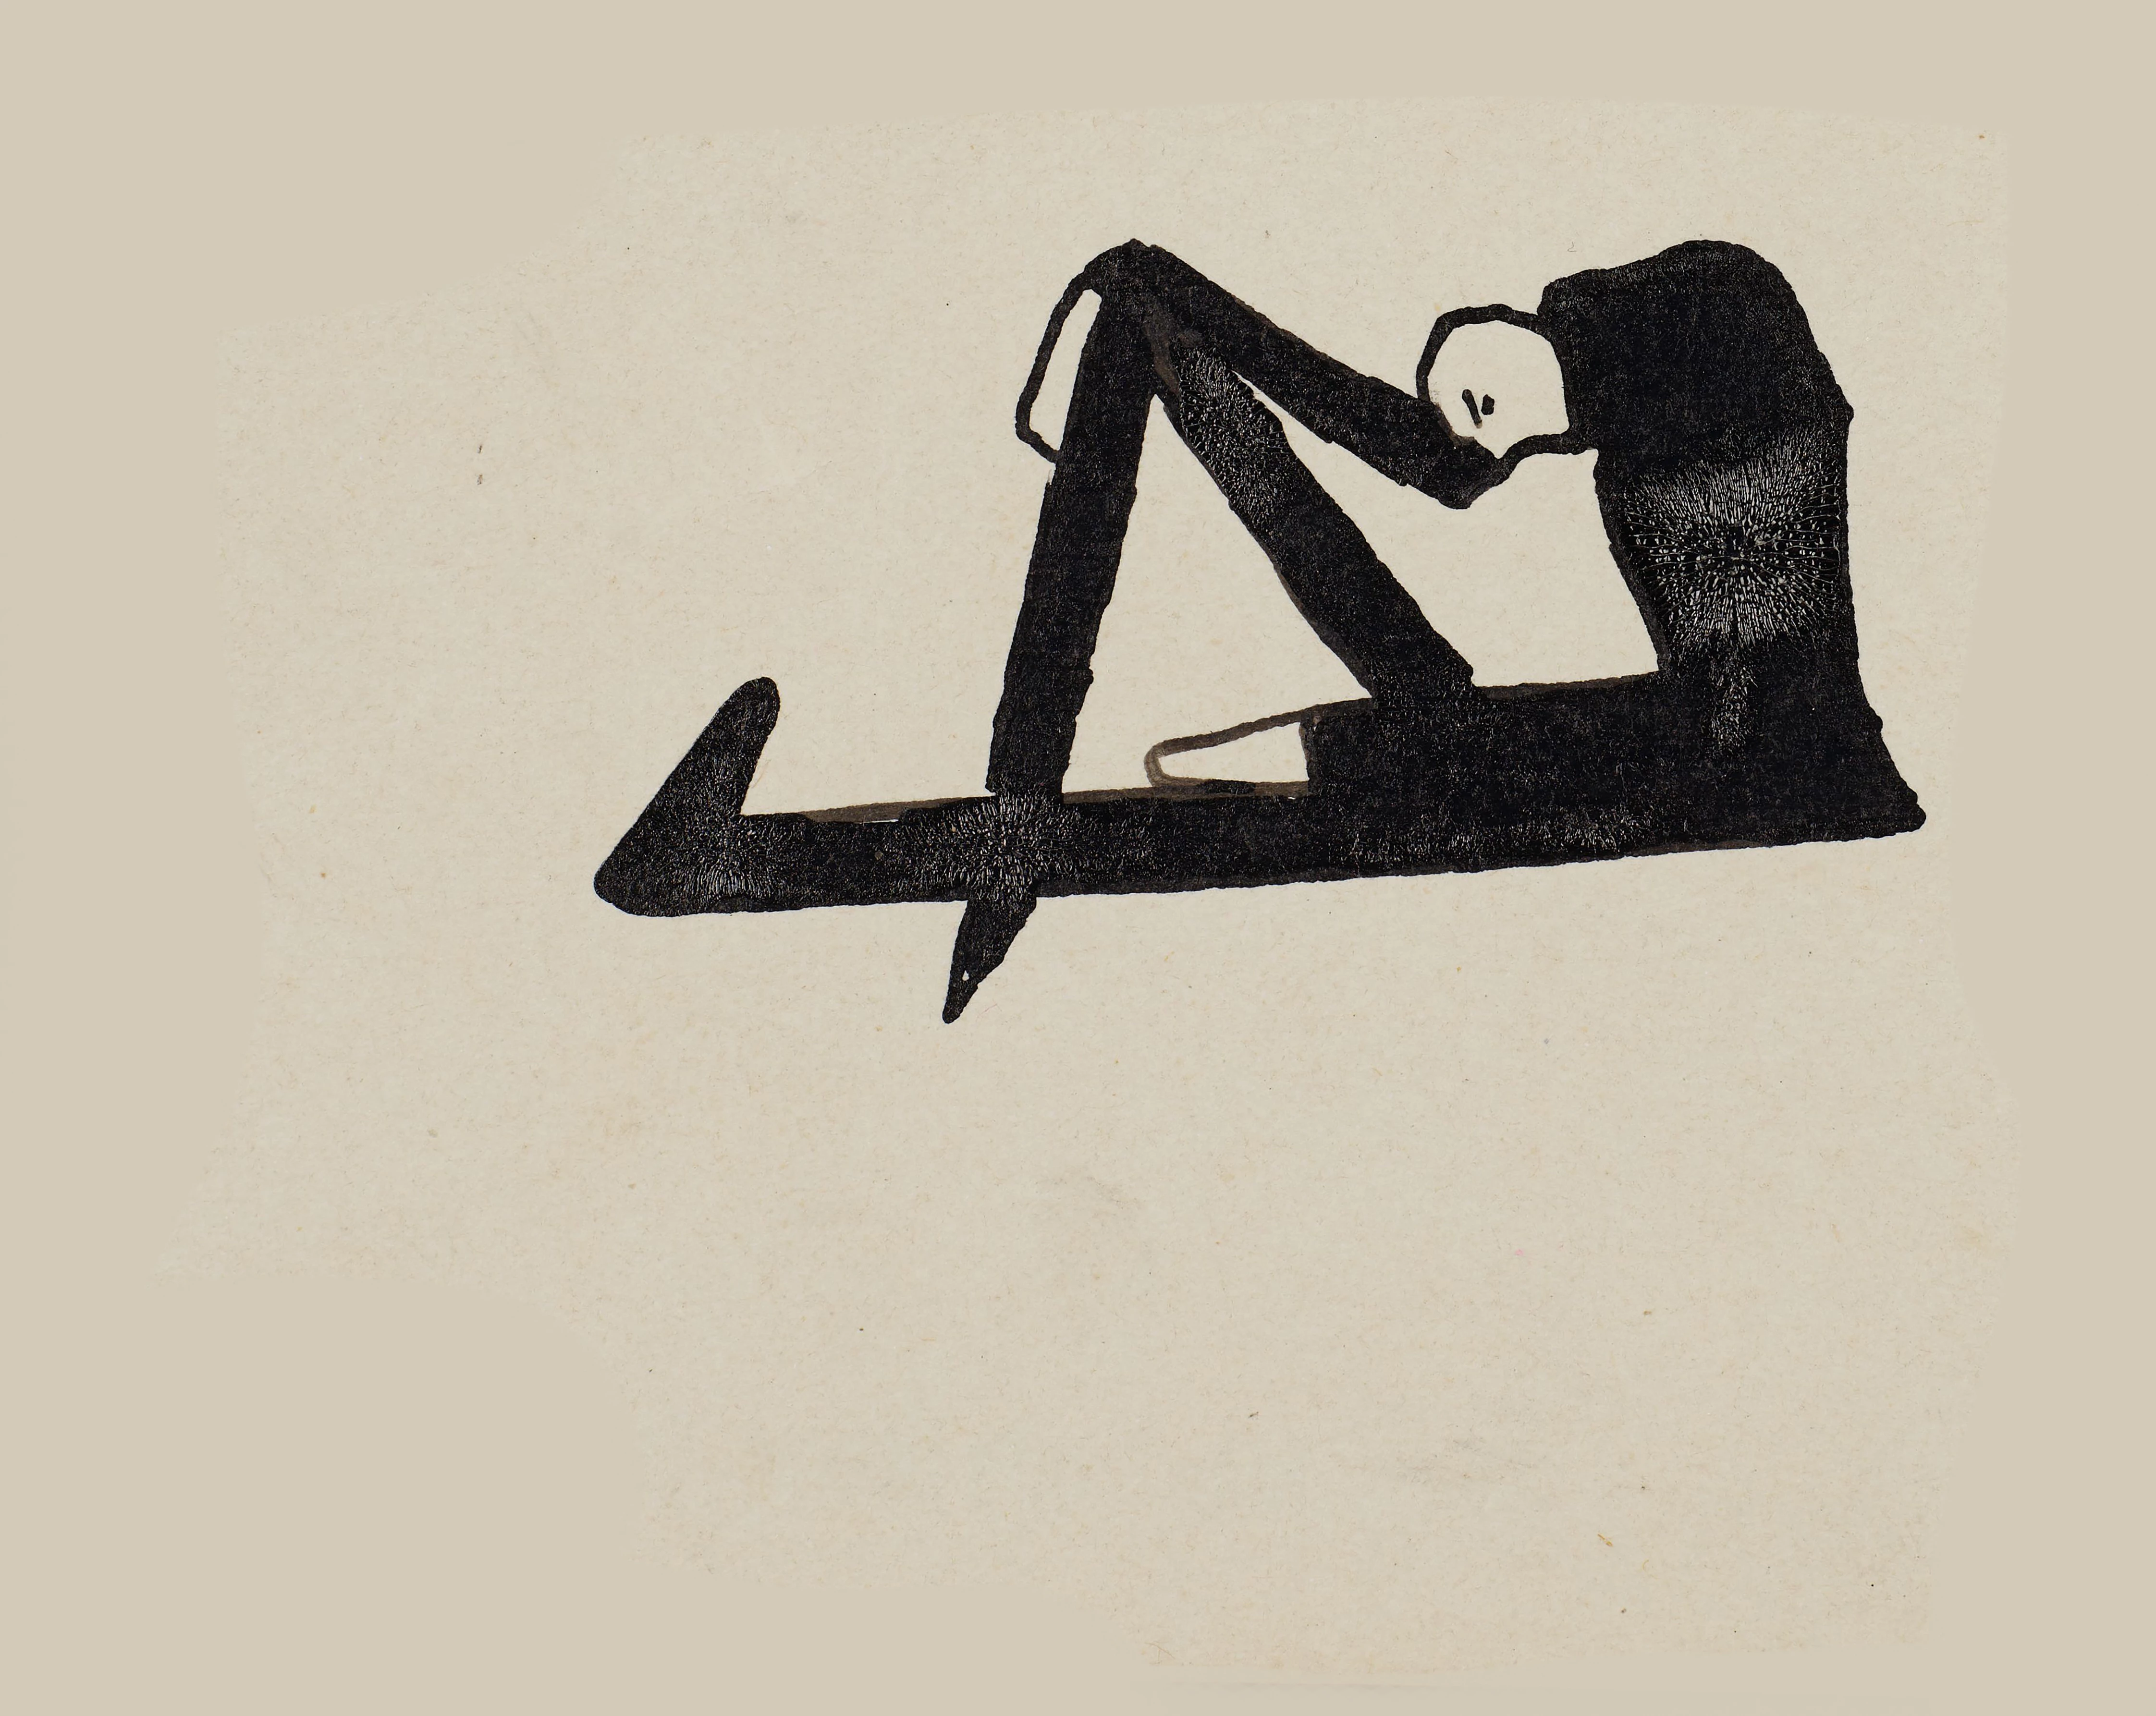 Малюнки Франці Кафки, 1923